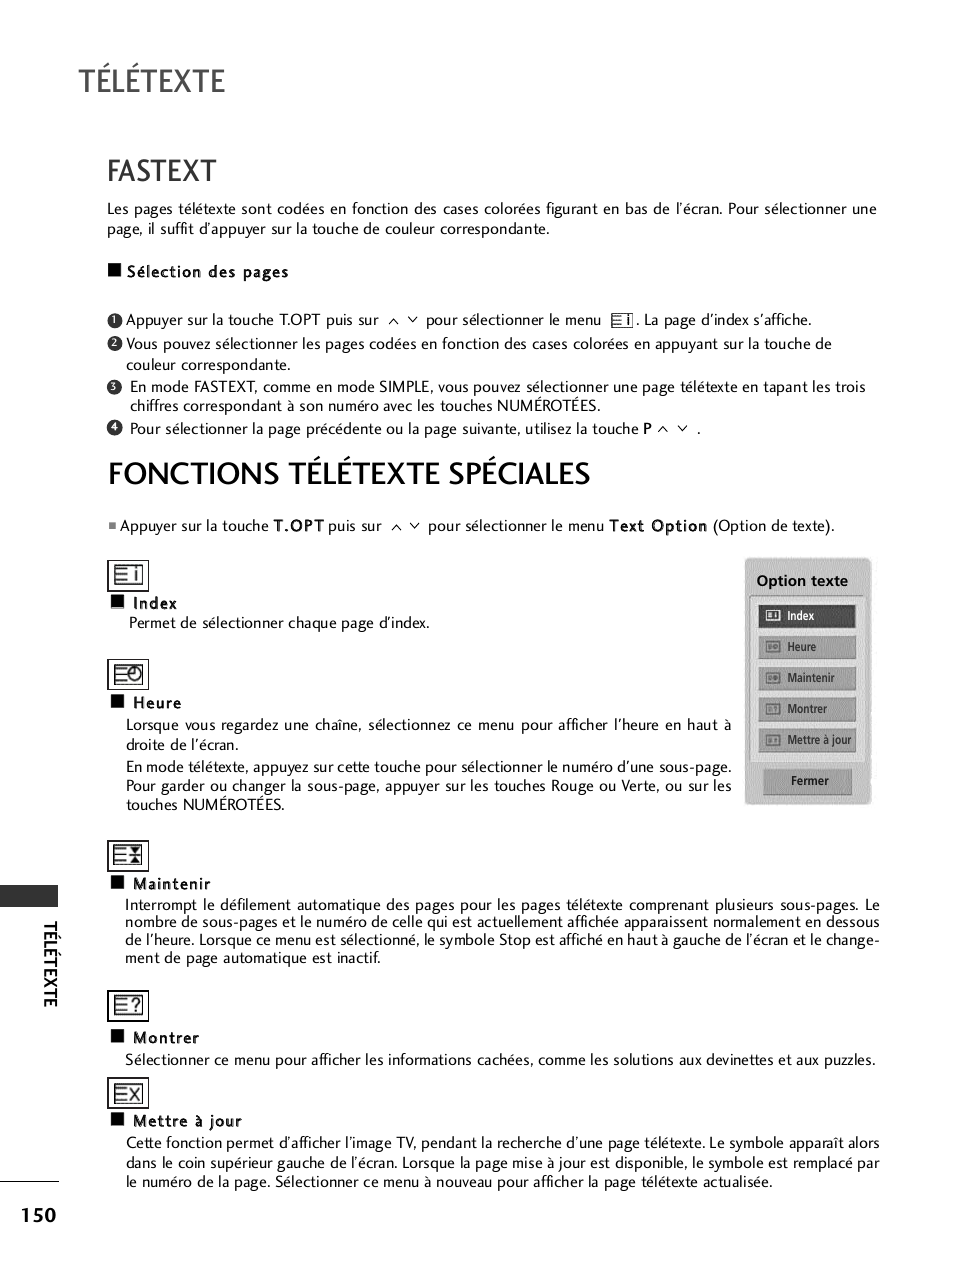 Fastext, Fonctions télétexte spéciales, Télétexte | LG 32LH40 Manuel d'utilisation | Page 152 / 180